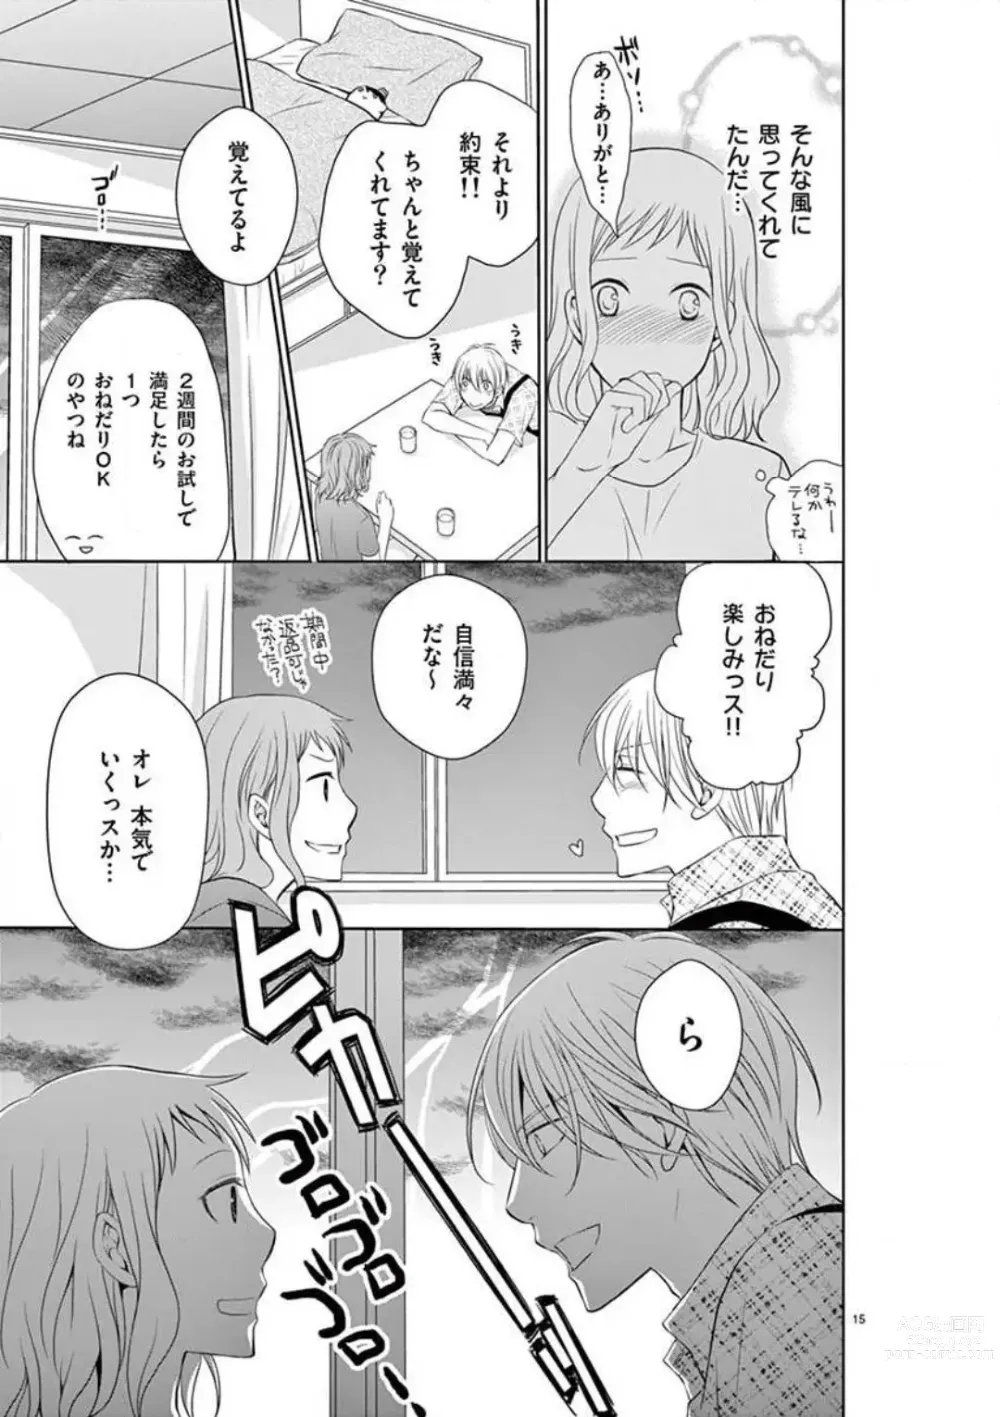 Page 15 of manga Senpai Gentei no Kedamonodesukara 〜 Kanshō-yō Ikemen no Hotobashiru Aijō〜 1-4